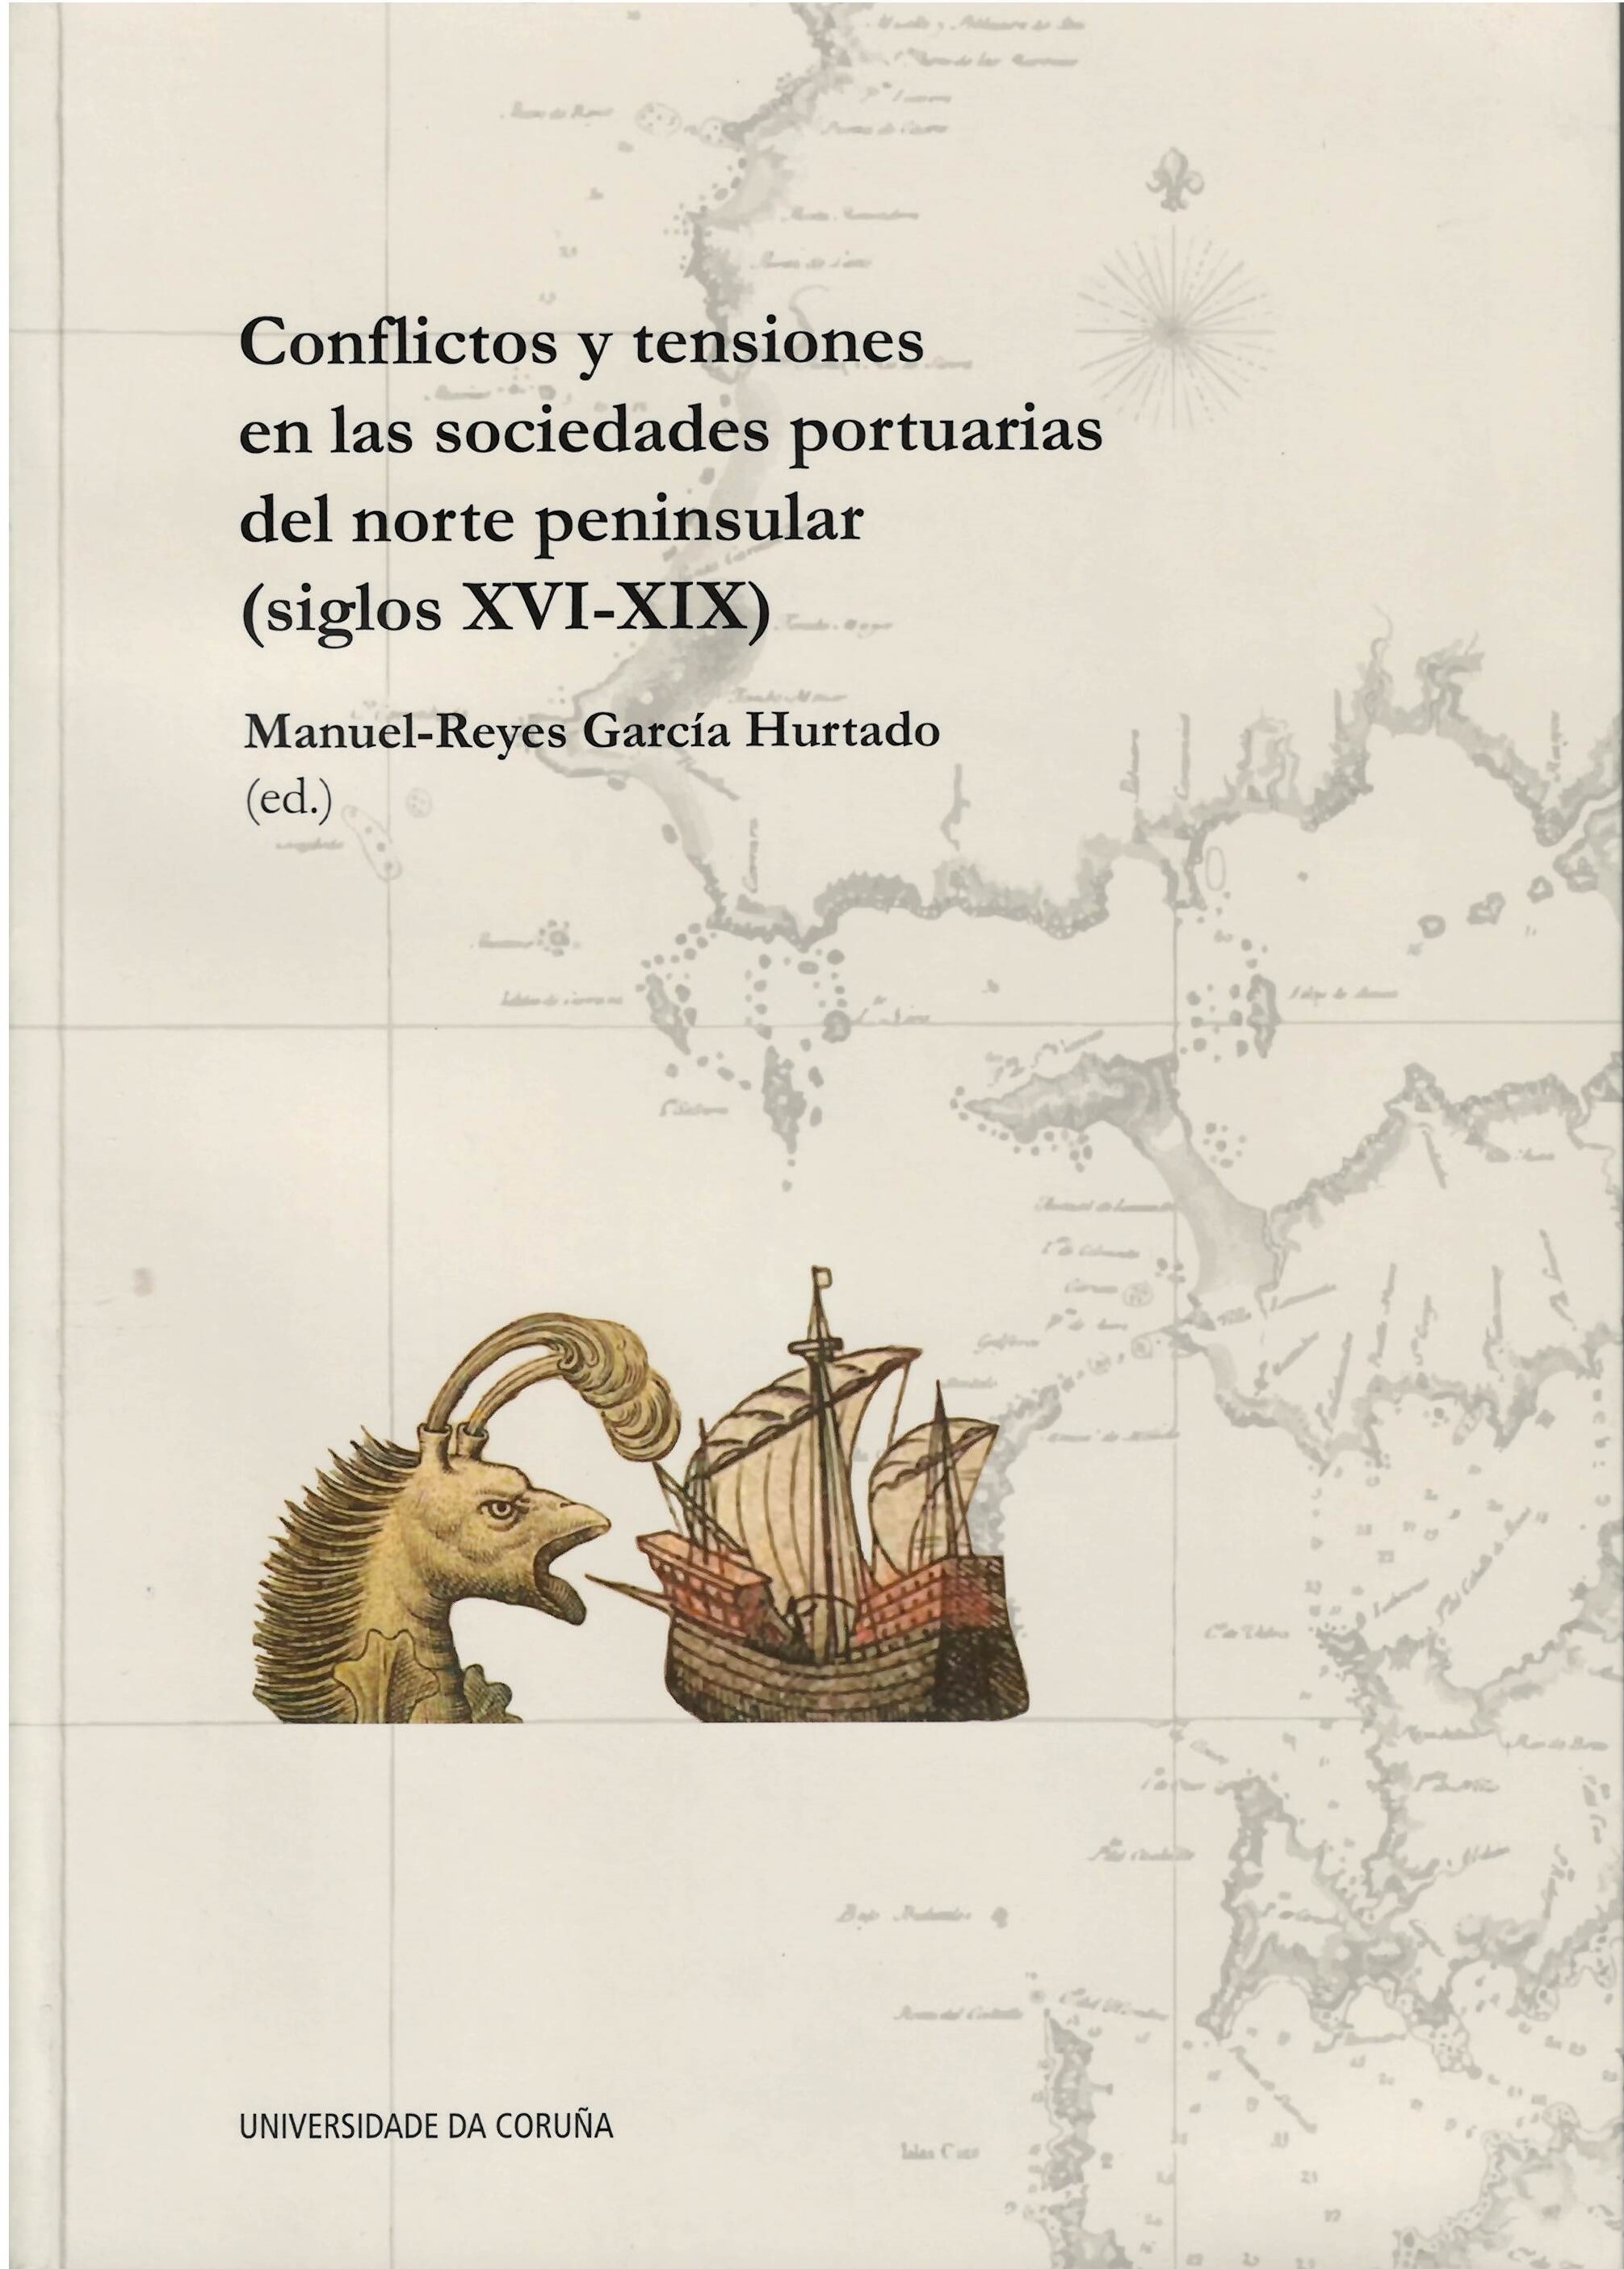 CONFLICTOS Y TENSIONES EN LAS SOCIEDADES PORTUARIAS DEL NORTE PENINSULAR (SIGLOS XVI-XIX)